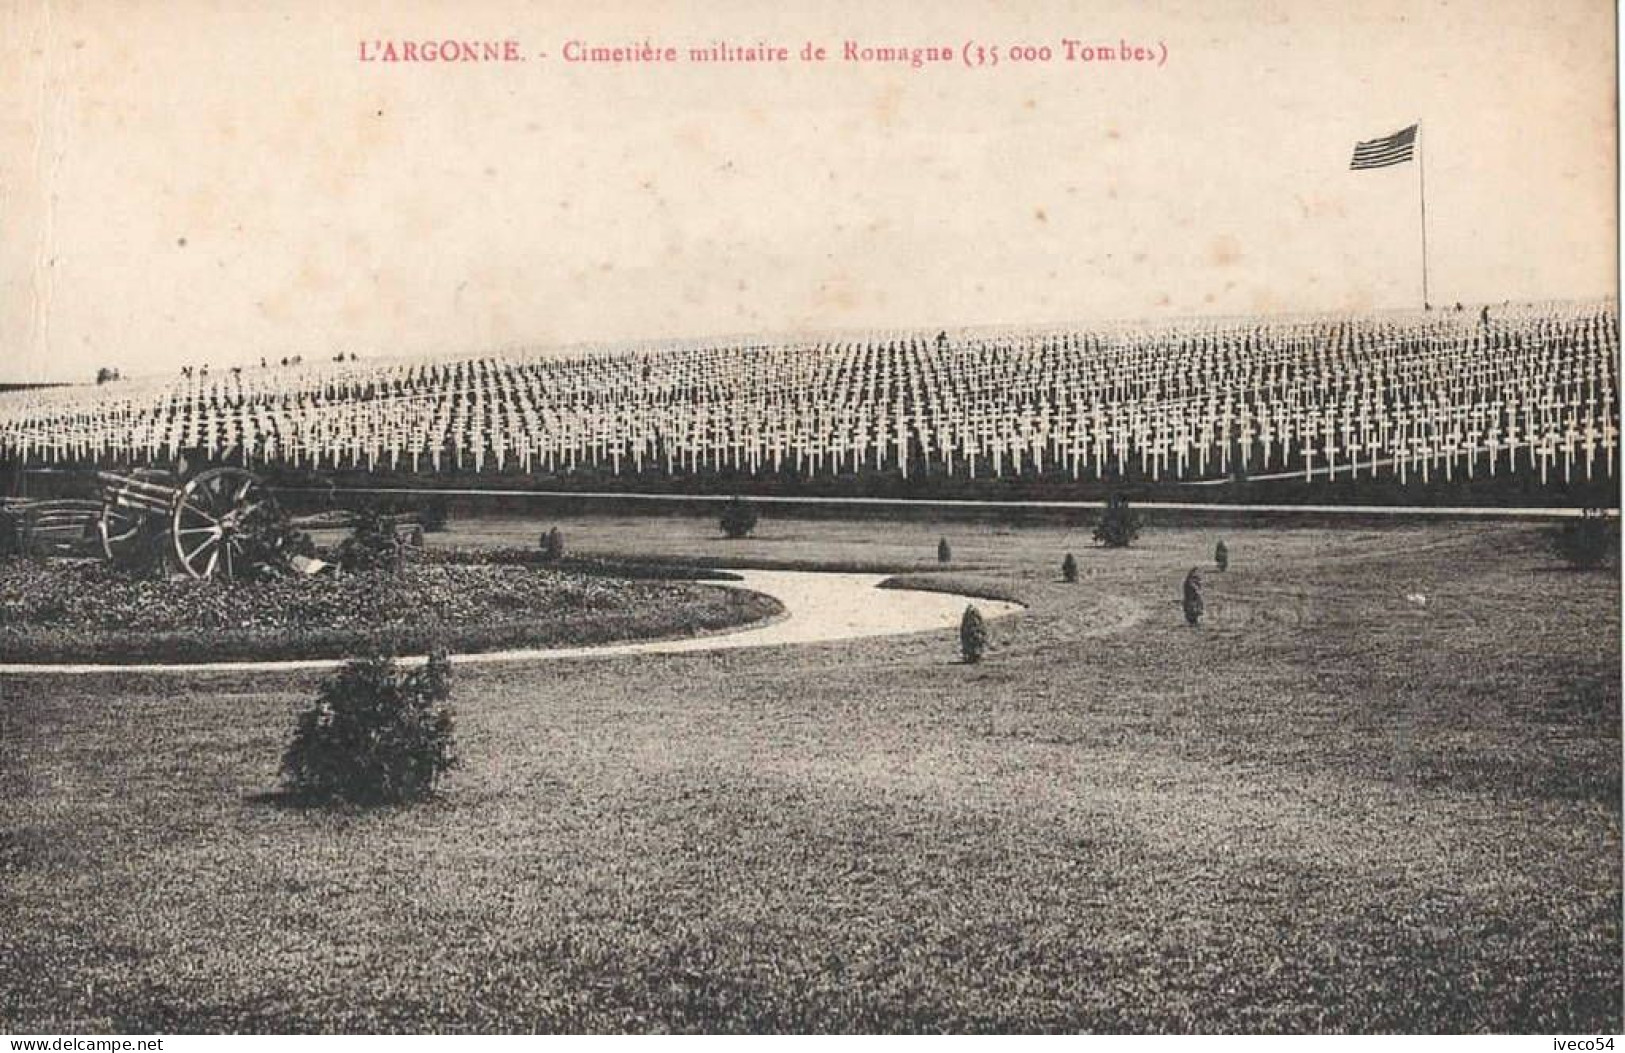 Meuse  / Argonne  Cimetière Militaire Américain     Romagne S/s Montfaucon   ( 35000  Tombes ) - Soldatenfriedhöfen